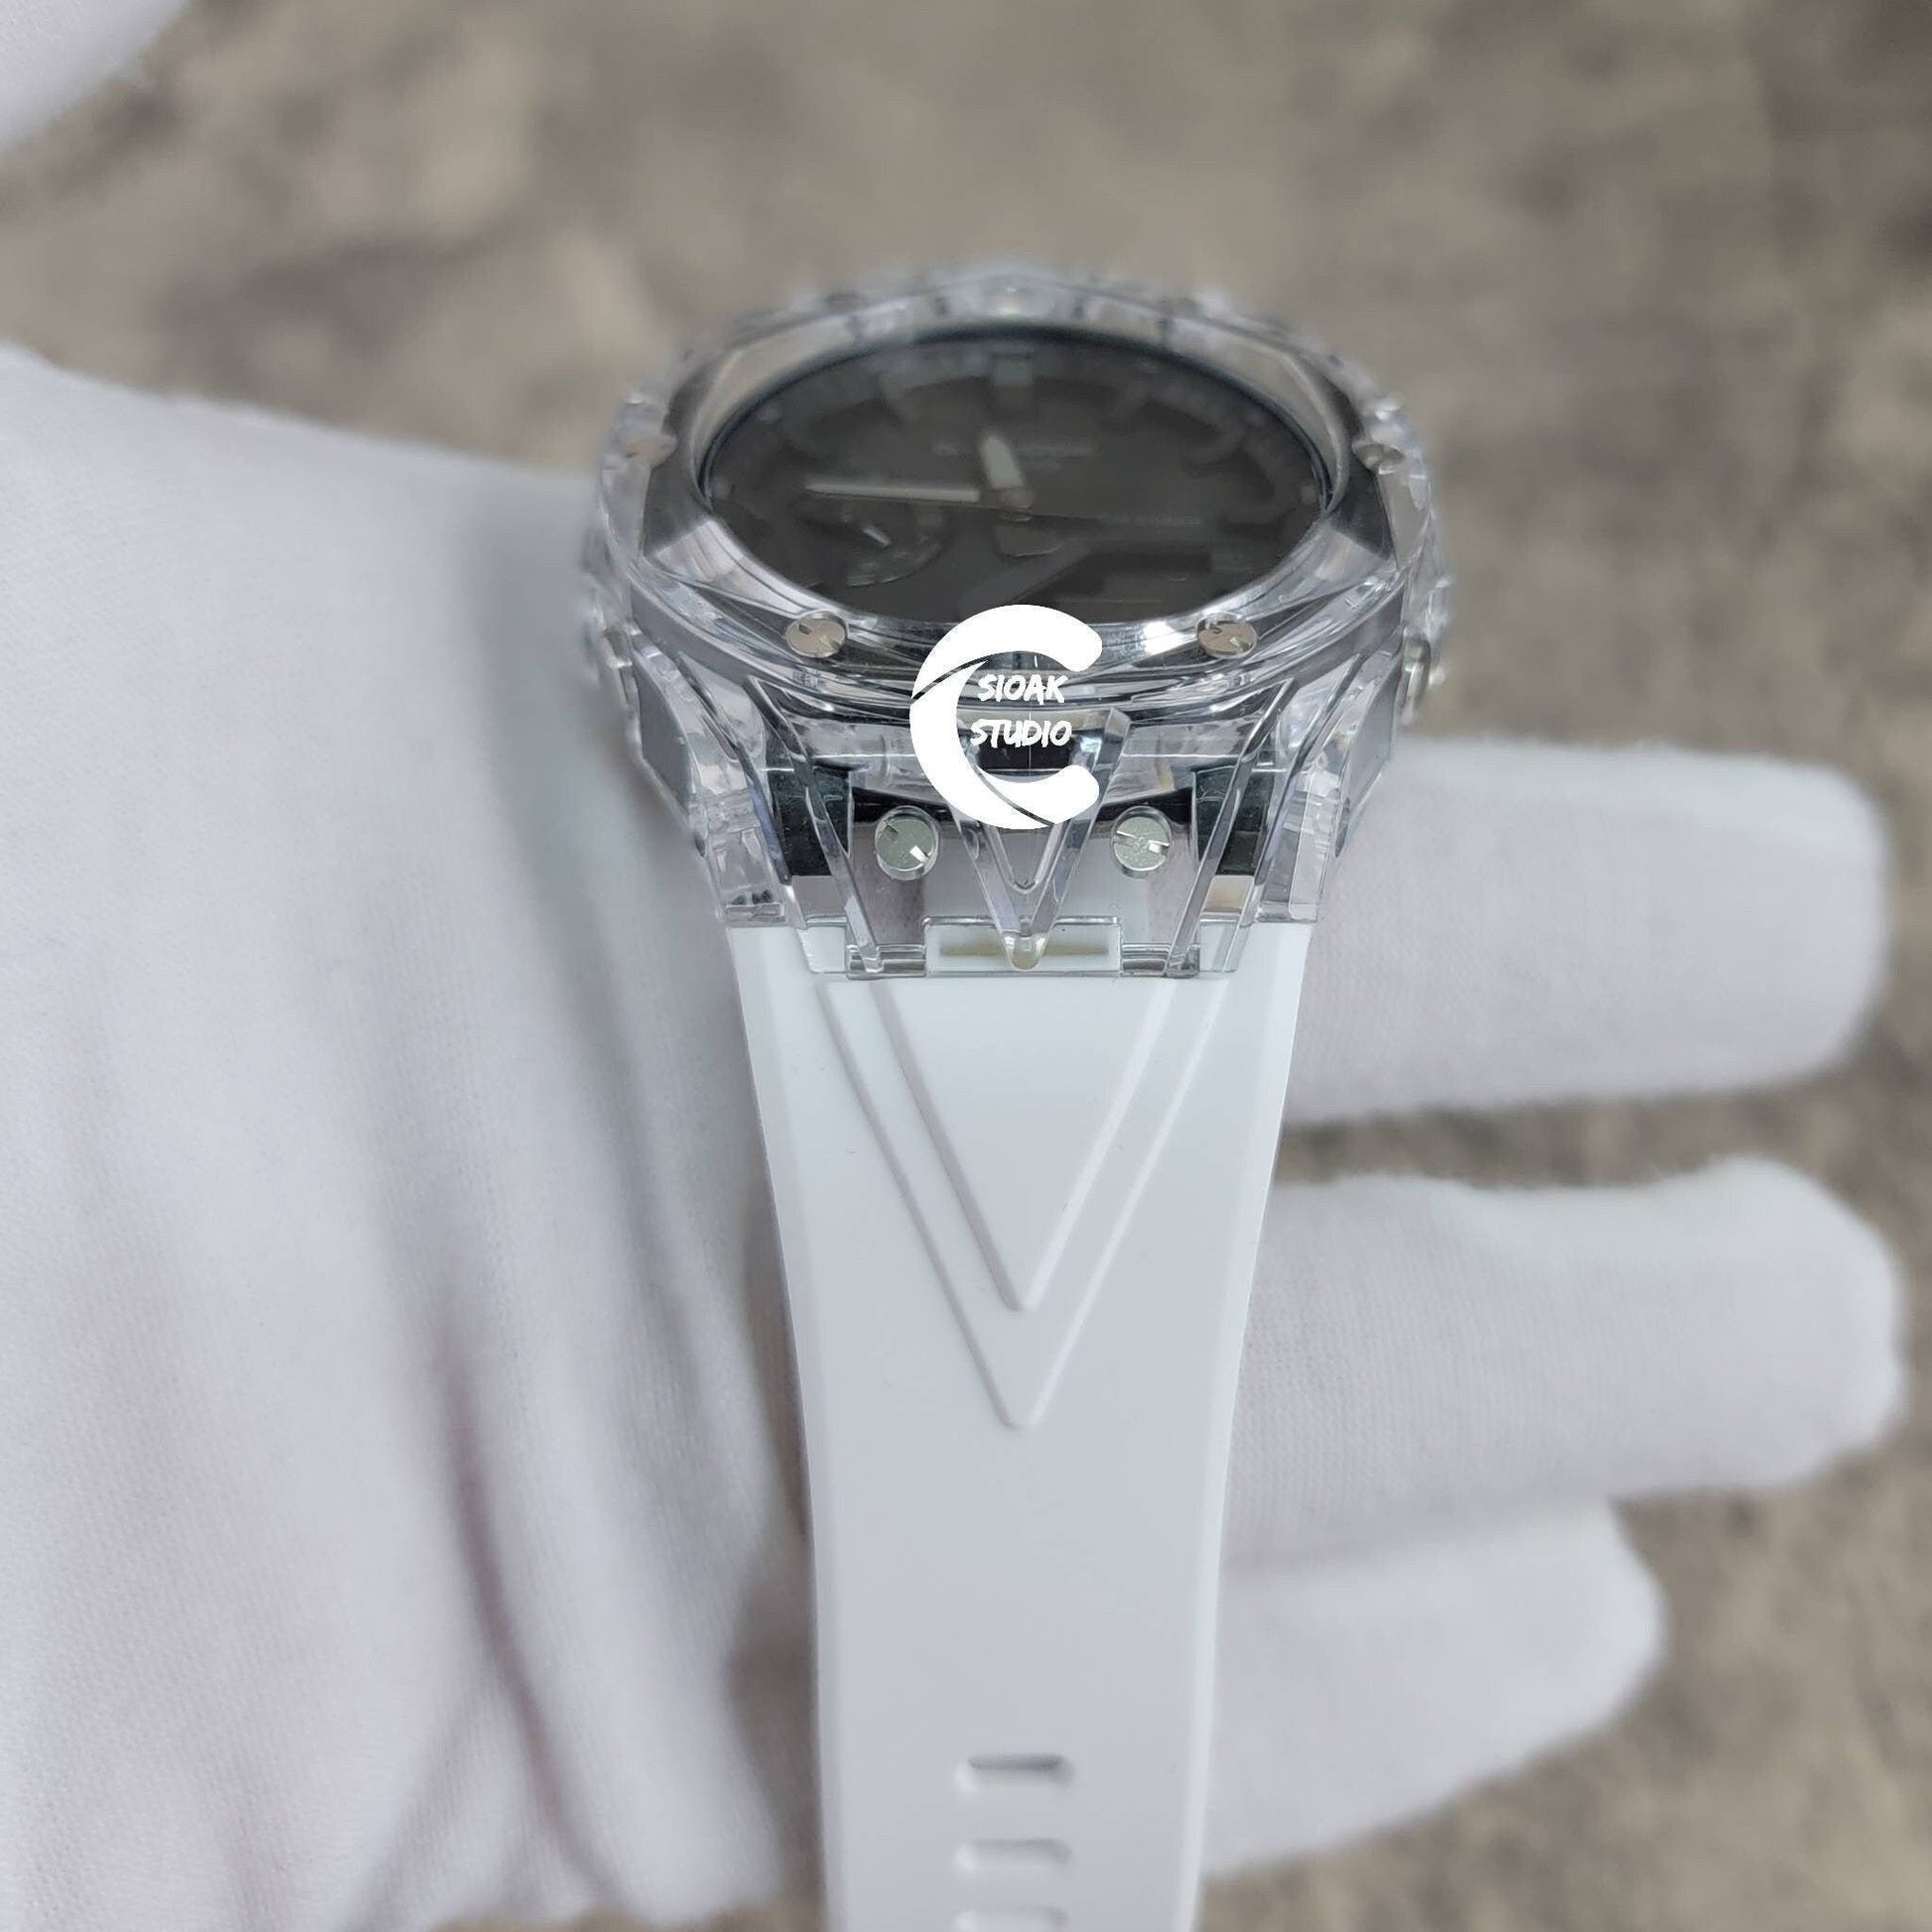 Casioak Mod Watch Transparent Case White Strap Black Time Mark Black Dial 44mm - Casioak Studio